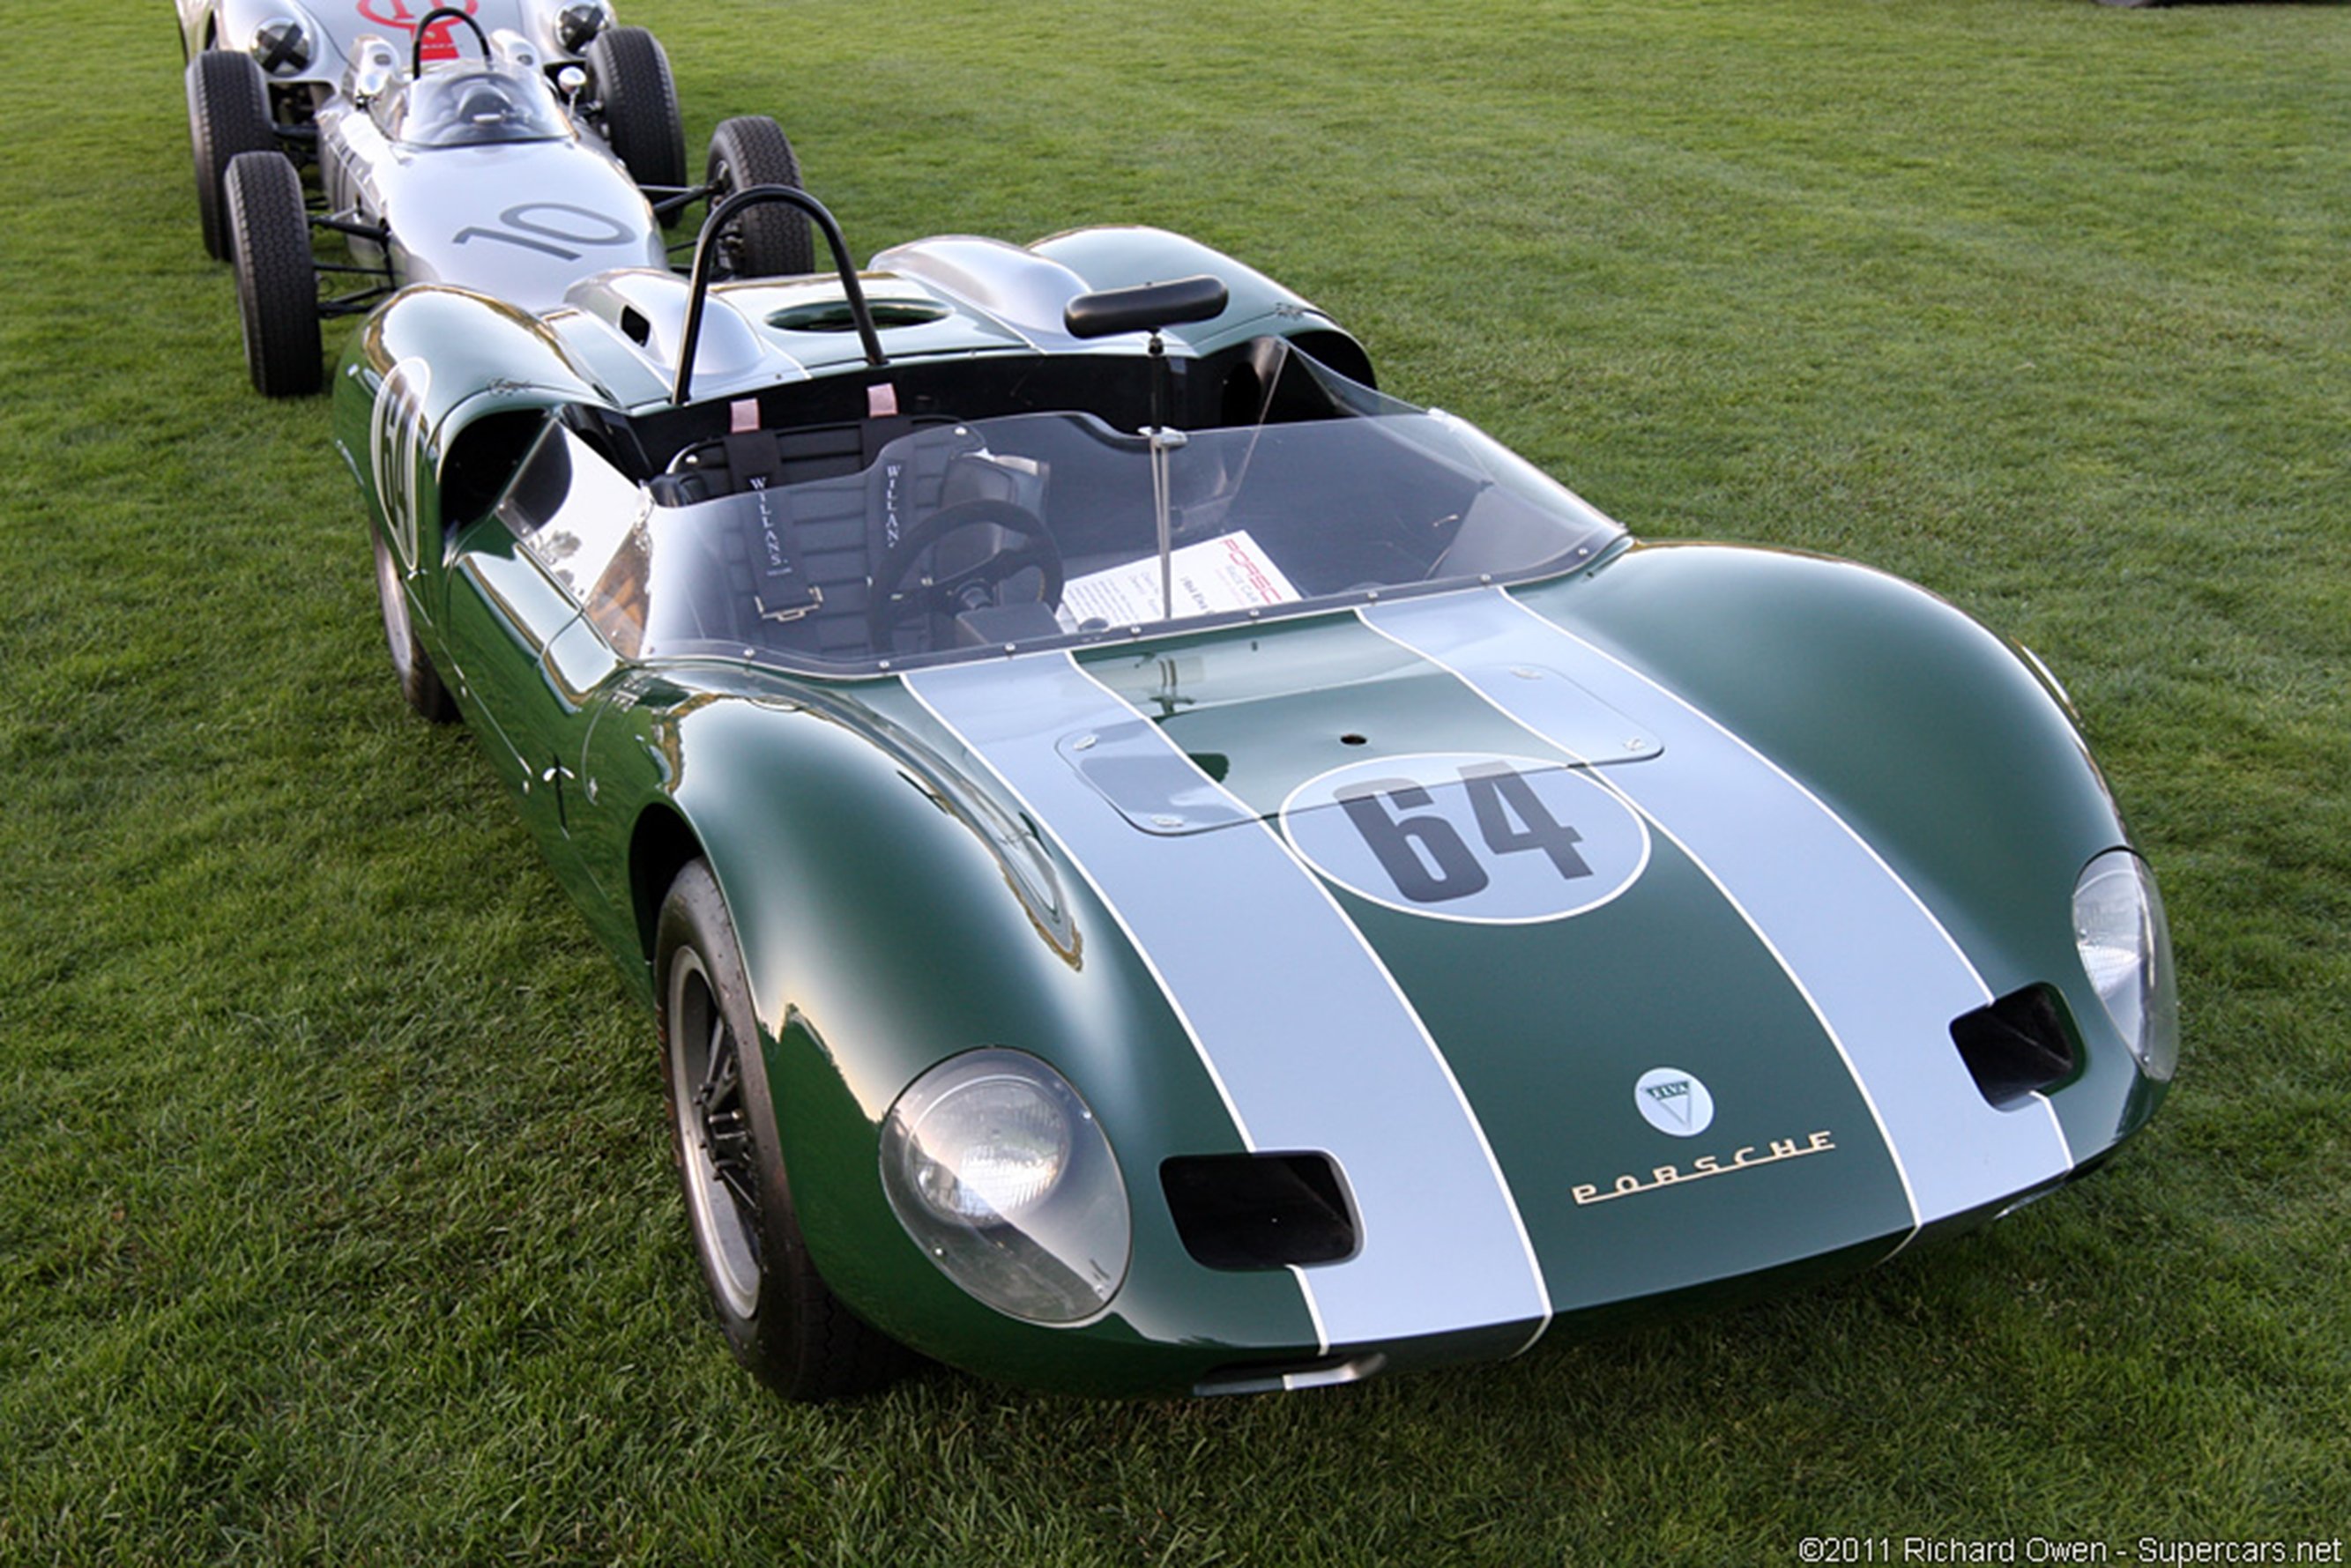 race, Car, Classic, Racing, Porsche, Green, 2667x1779 Wallpaper